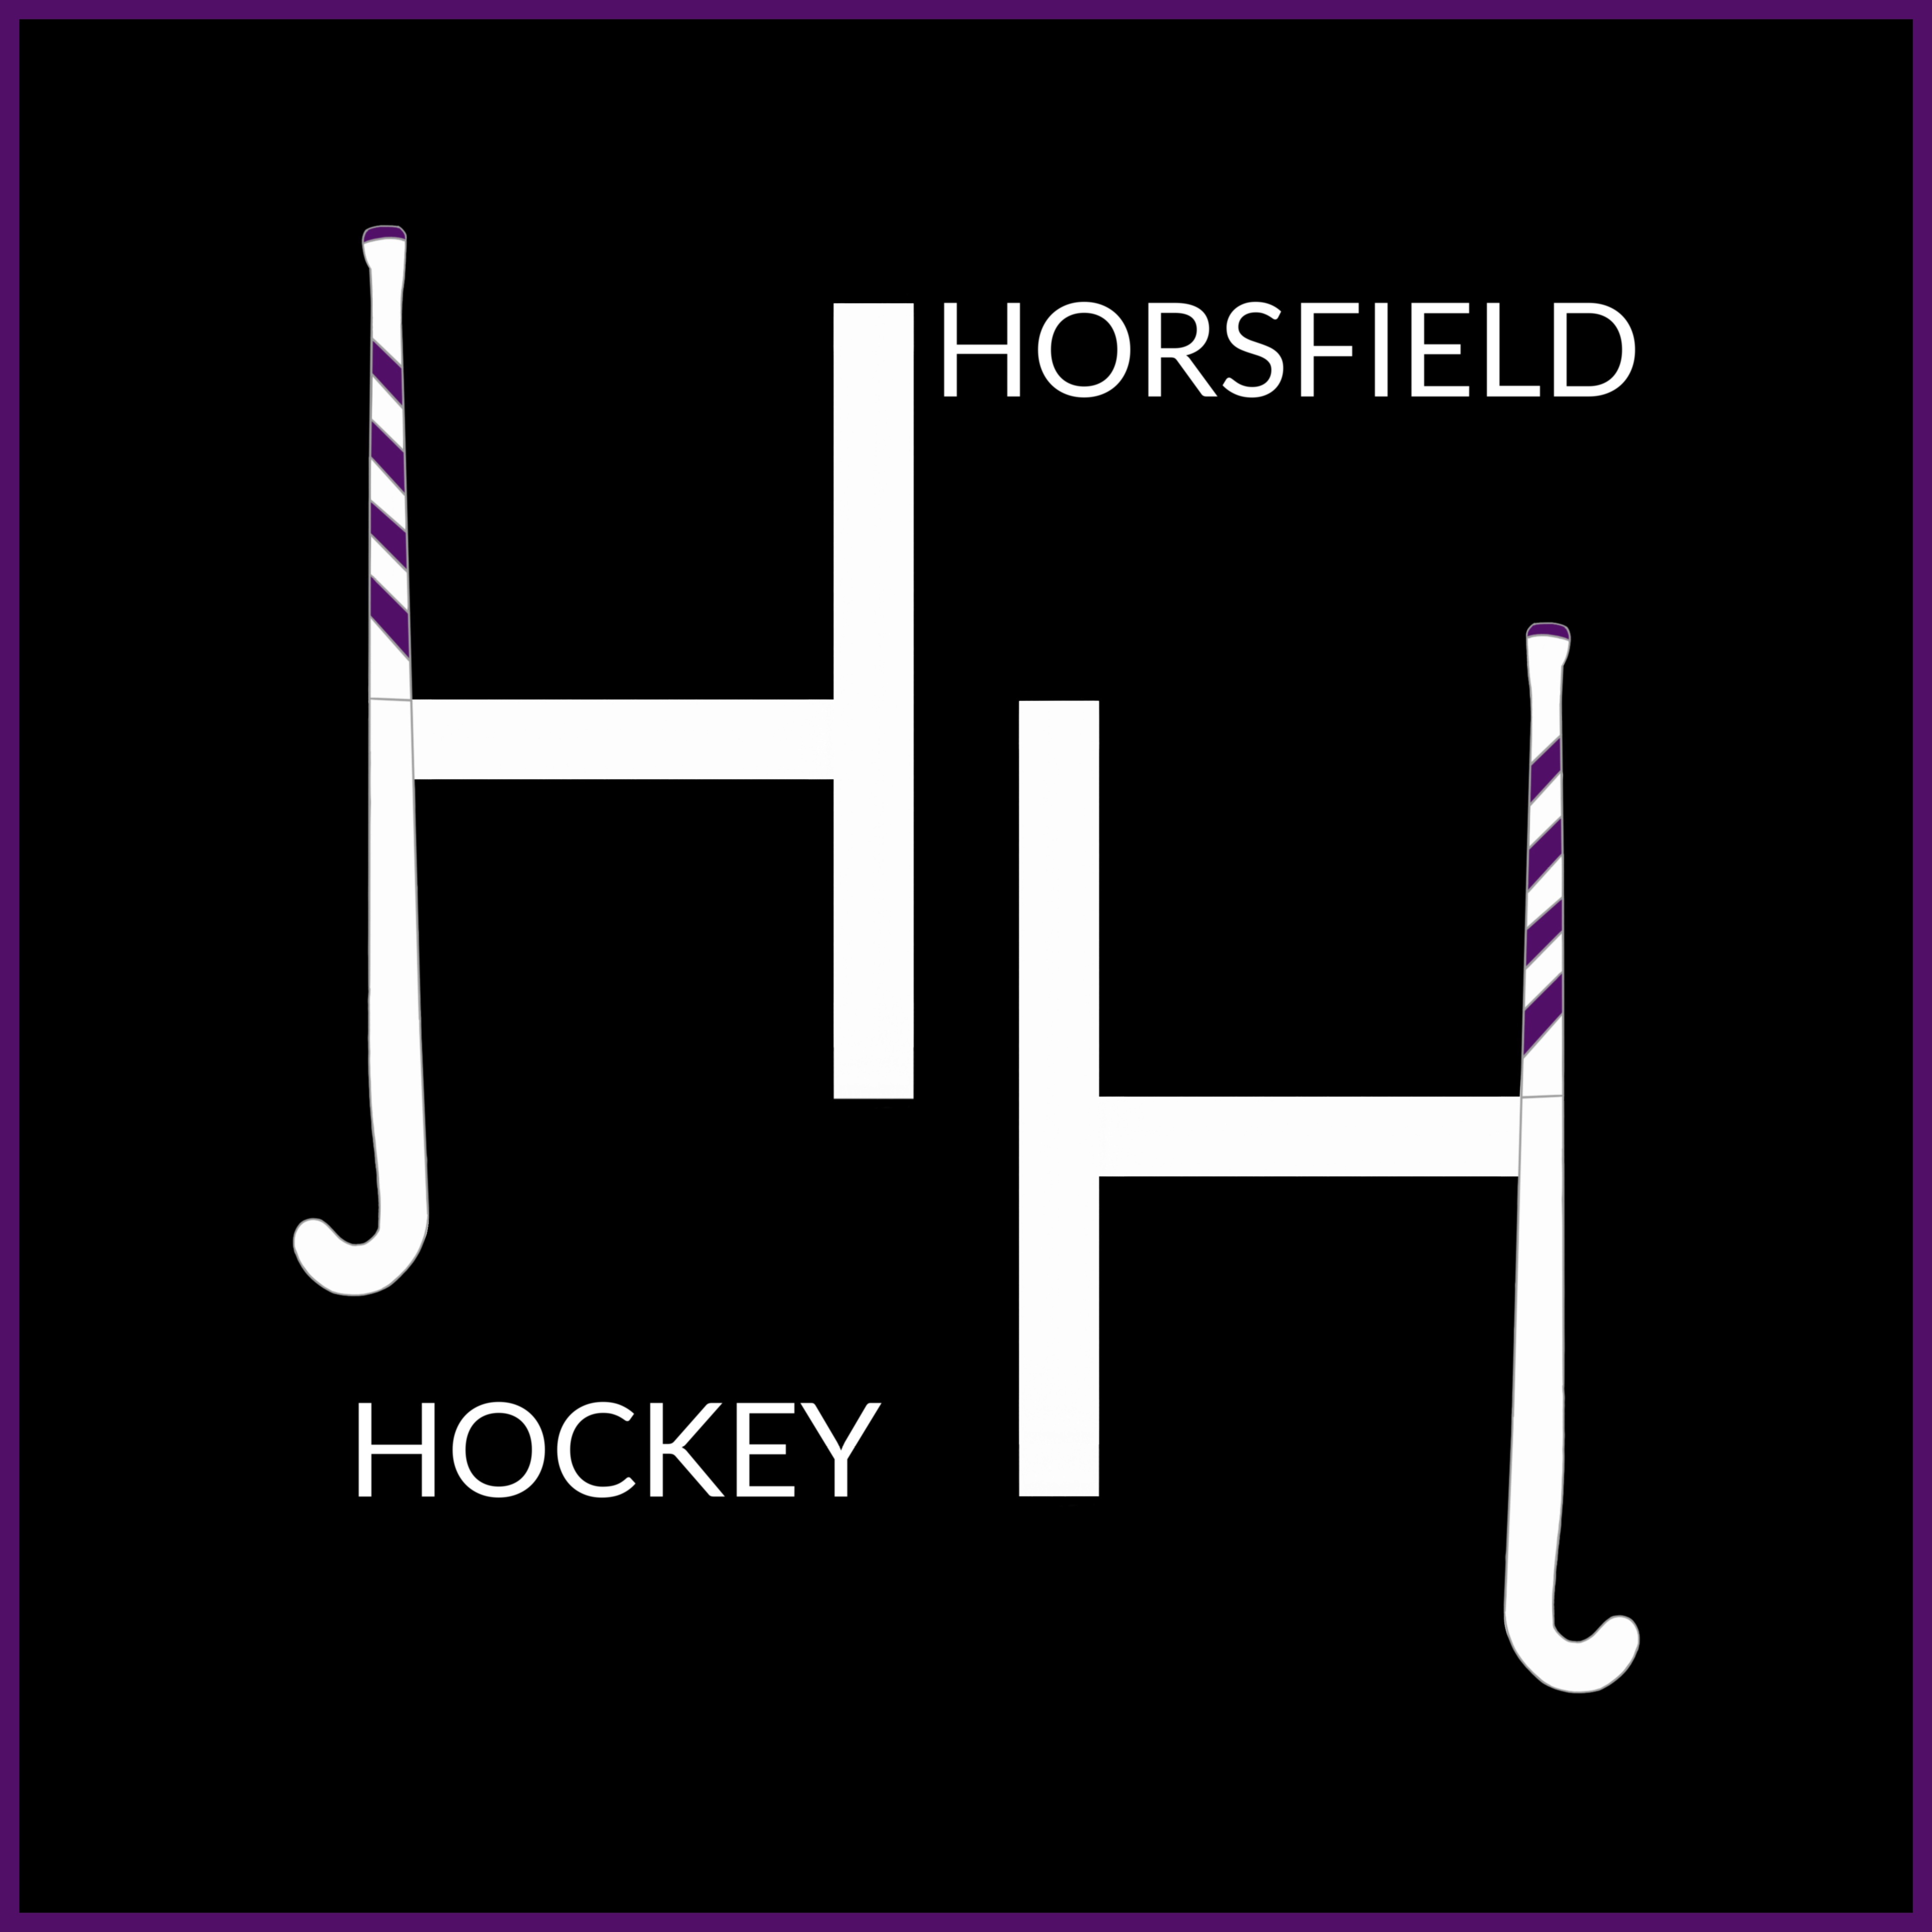 horsfield_hockey.jpg